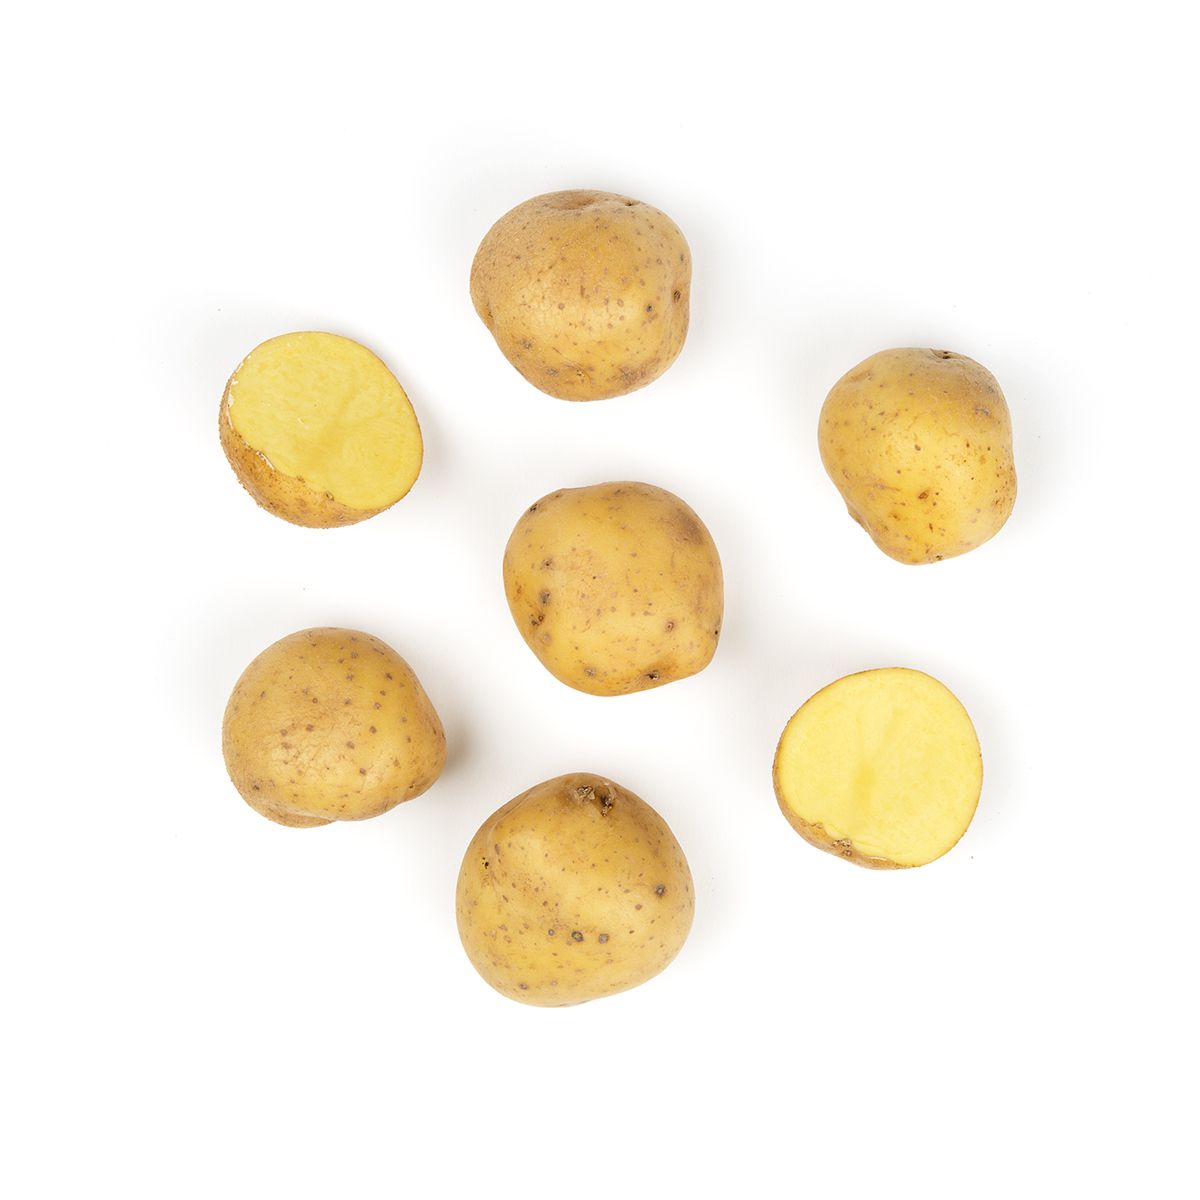 BoxNCase Yukon B Potatoes